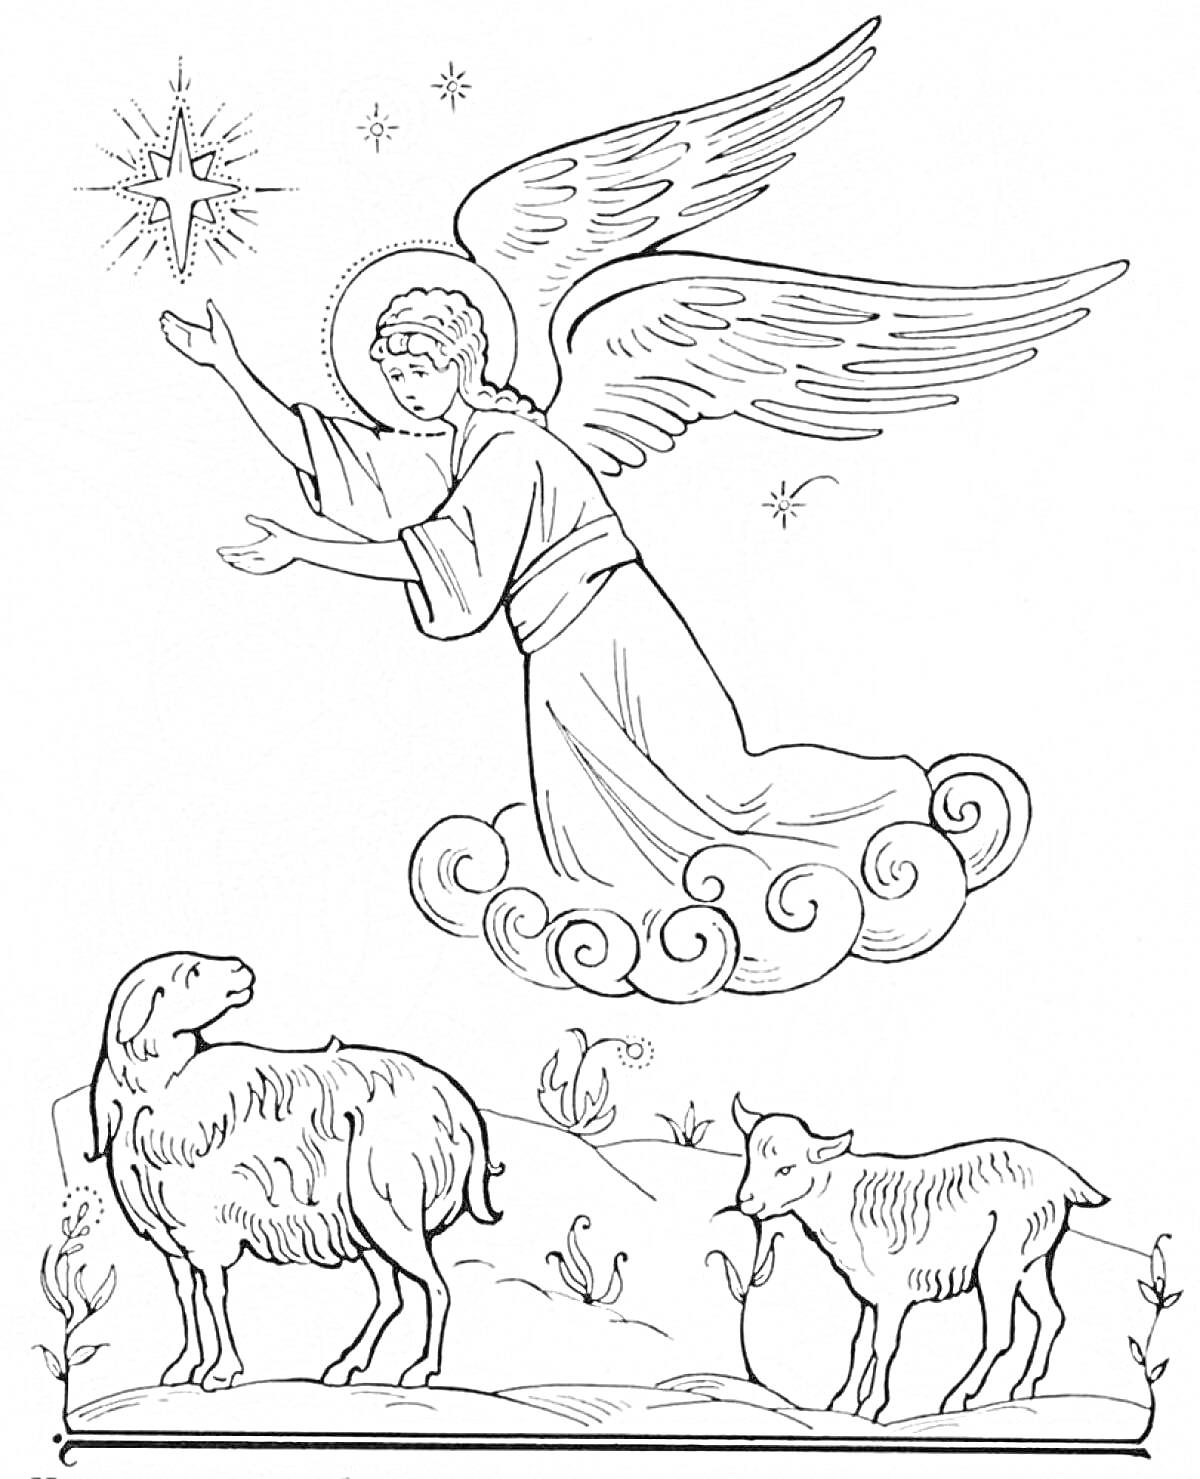 Раскраска Ангел на небесном облаке, овца и ягненок на земле с растениями